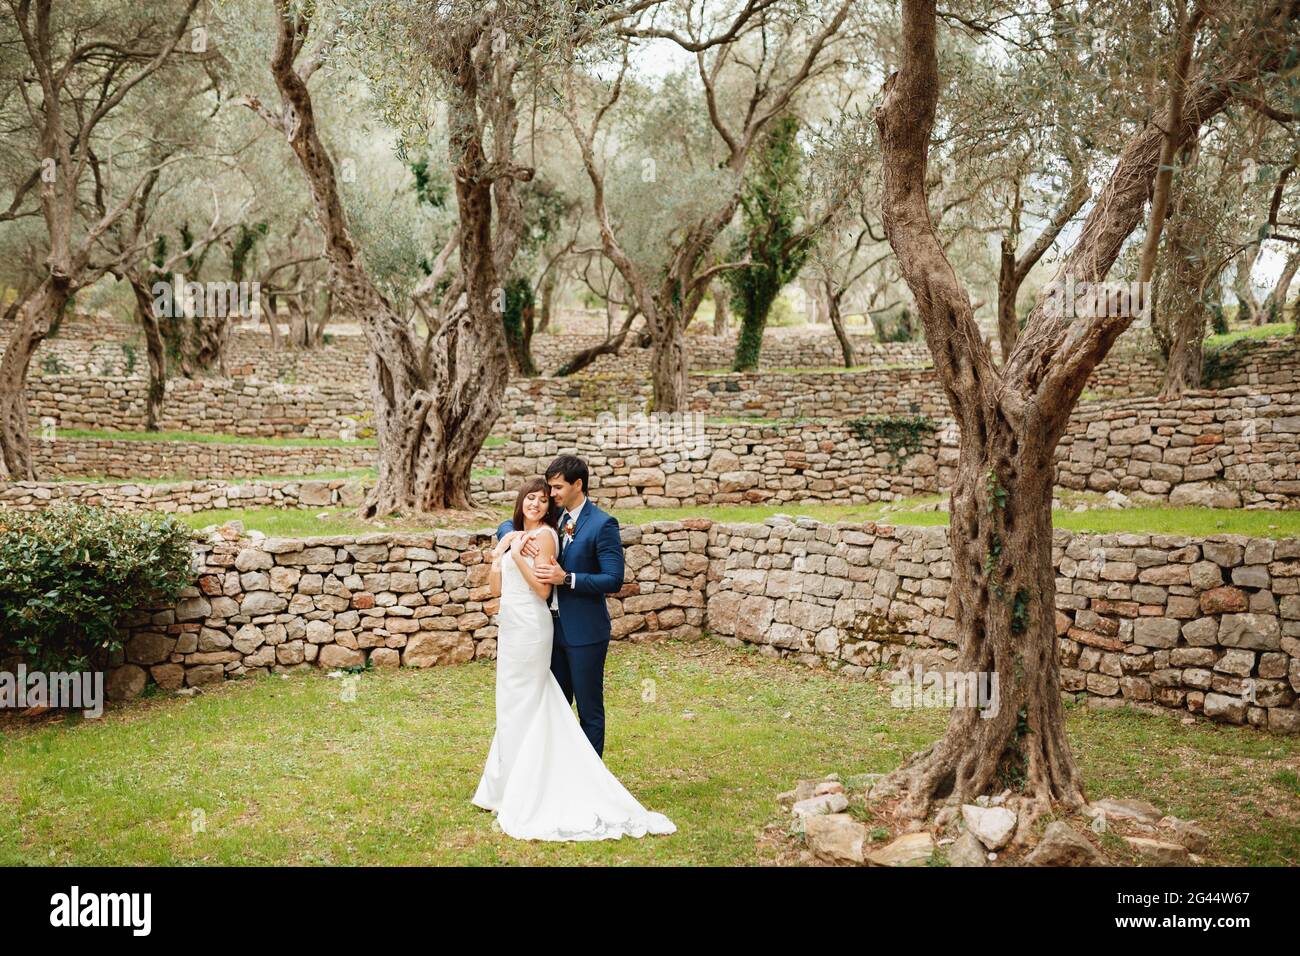 Der Bräutigam umarmt die Braut in einem weißen Hochzeitskleid vor dem Hintergrund eines wunderschönen mehrstufigen Gartens mit einem Steinzaun und einem grünen T Stockfoto